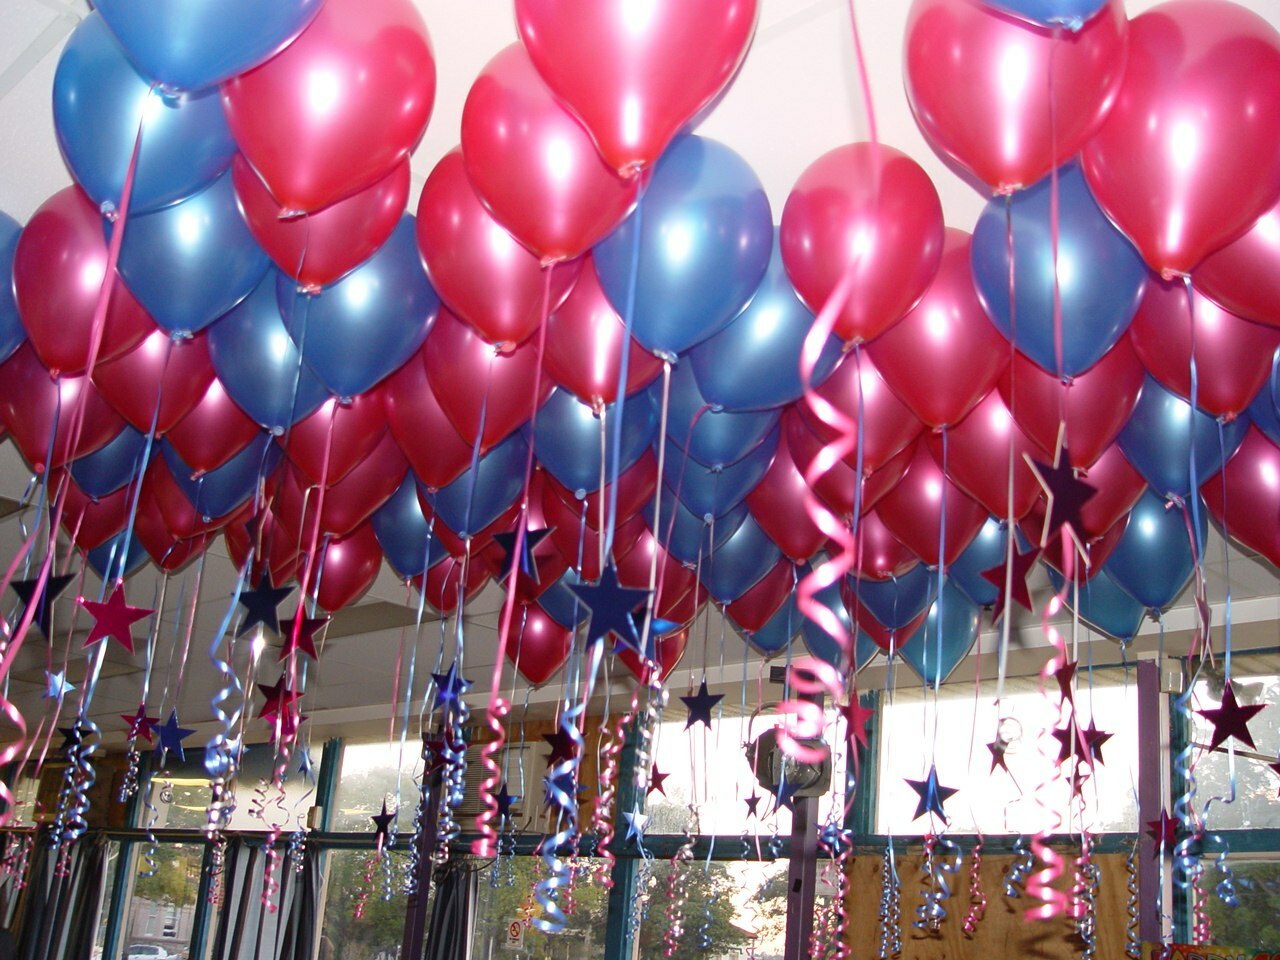 Фото с воздушными шарами на день рождения